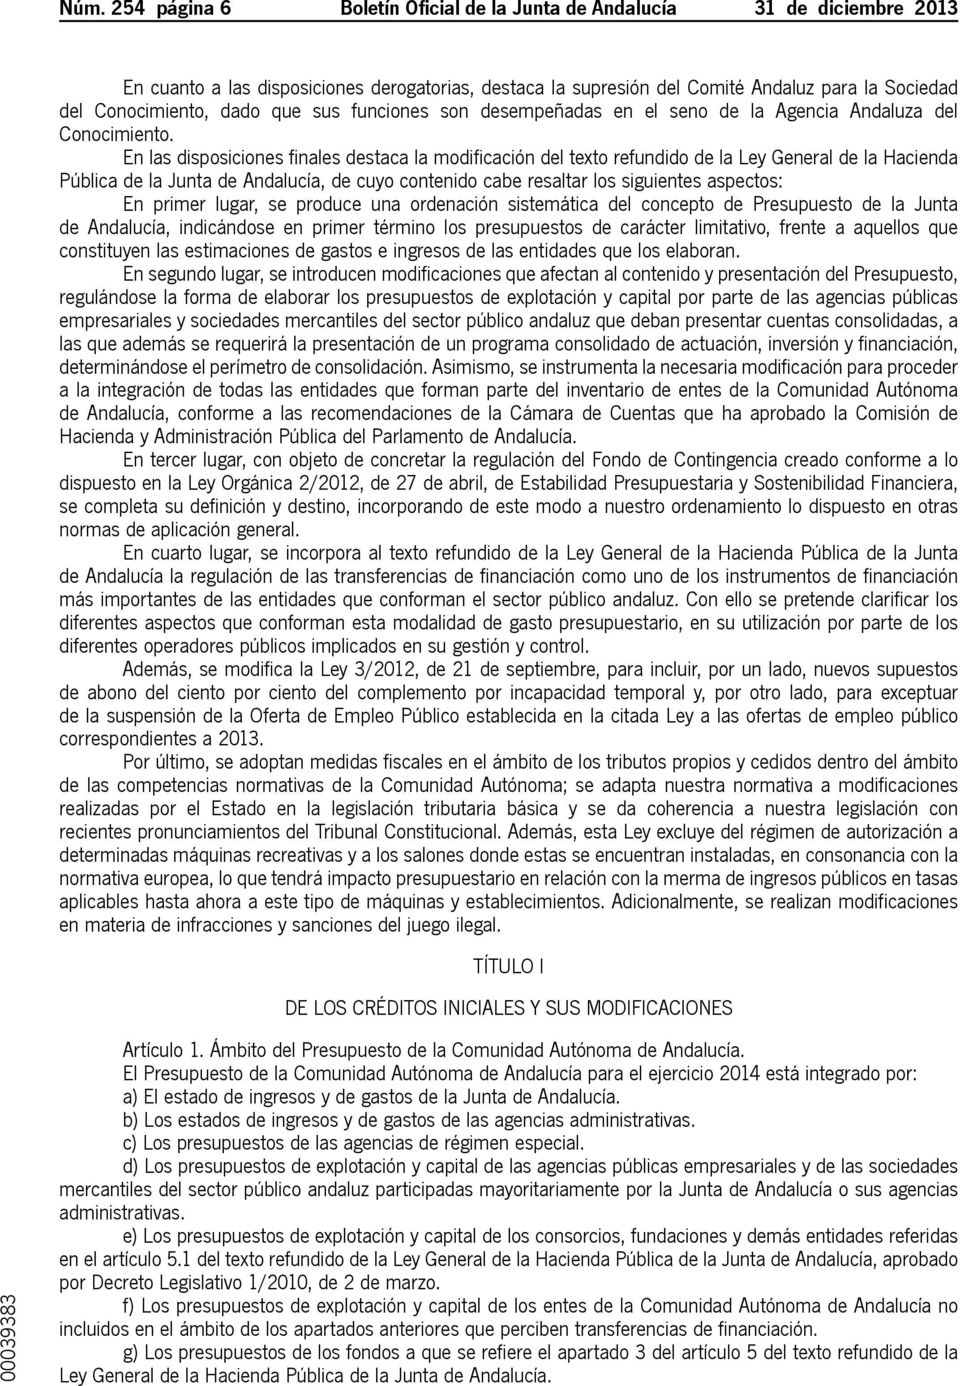 En las disposiciones finales destaca la modificación del texto refundido de la Ley General de la Hacienda Pública de la Junta de Andalucía, de cuyo contenido cabe resaltar los siguientes aspectos: En